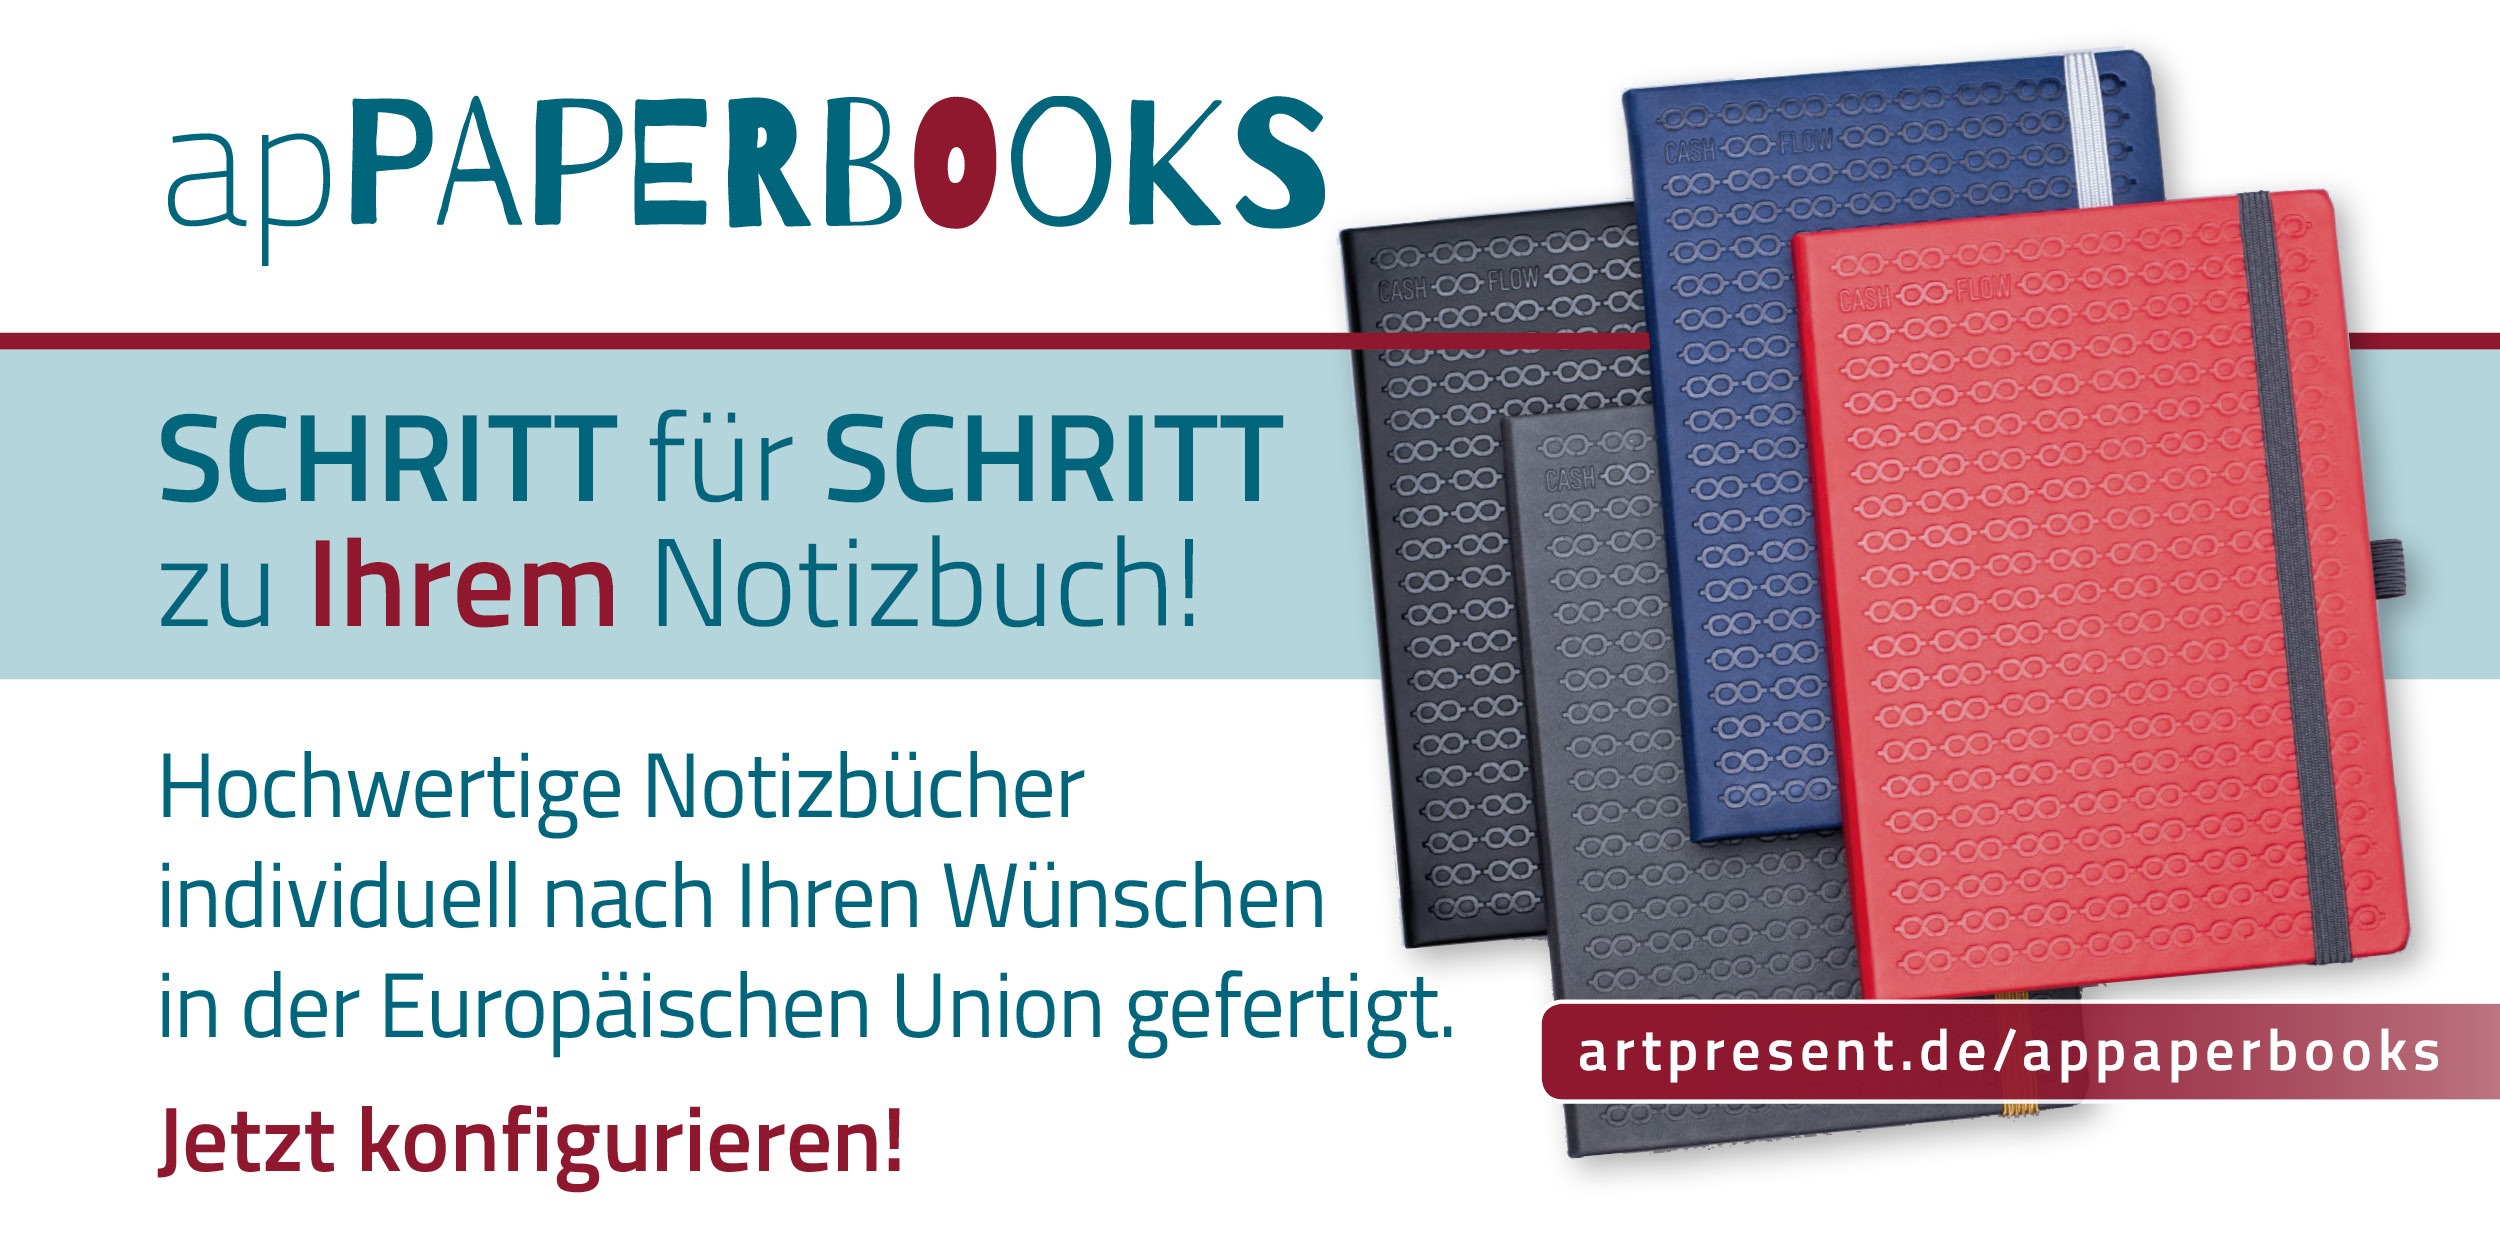 Featured image for “Paperbooks von artPRESENT”